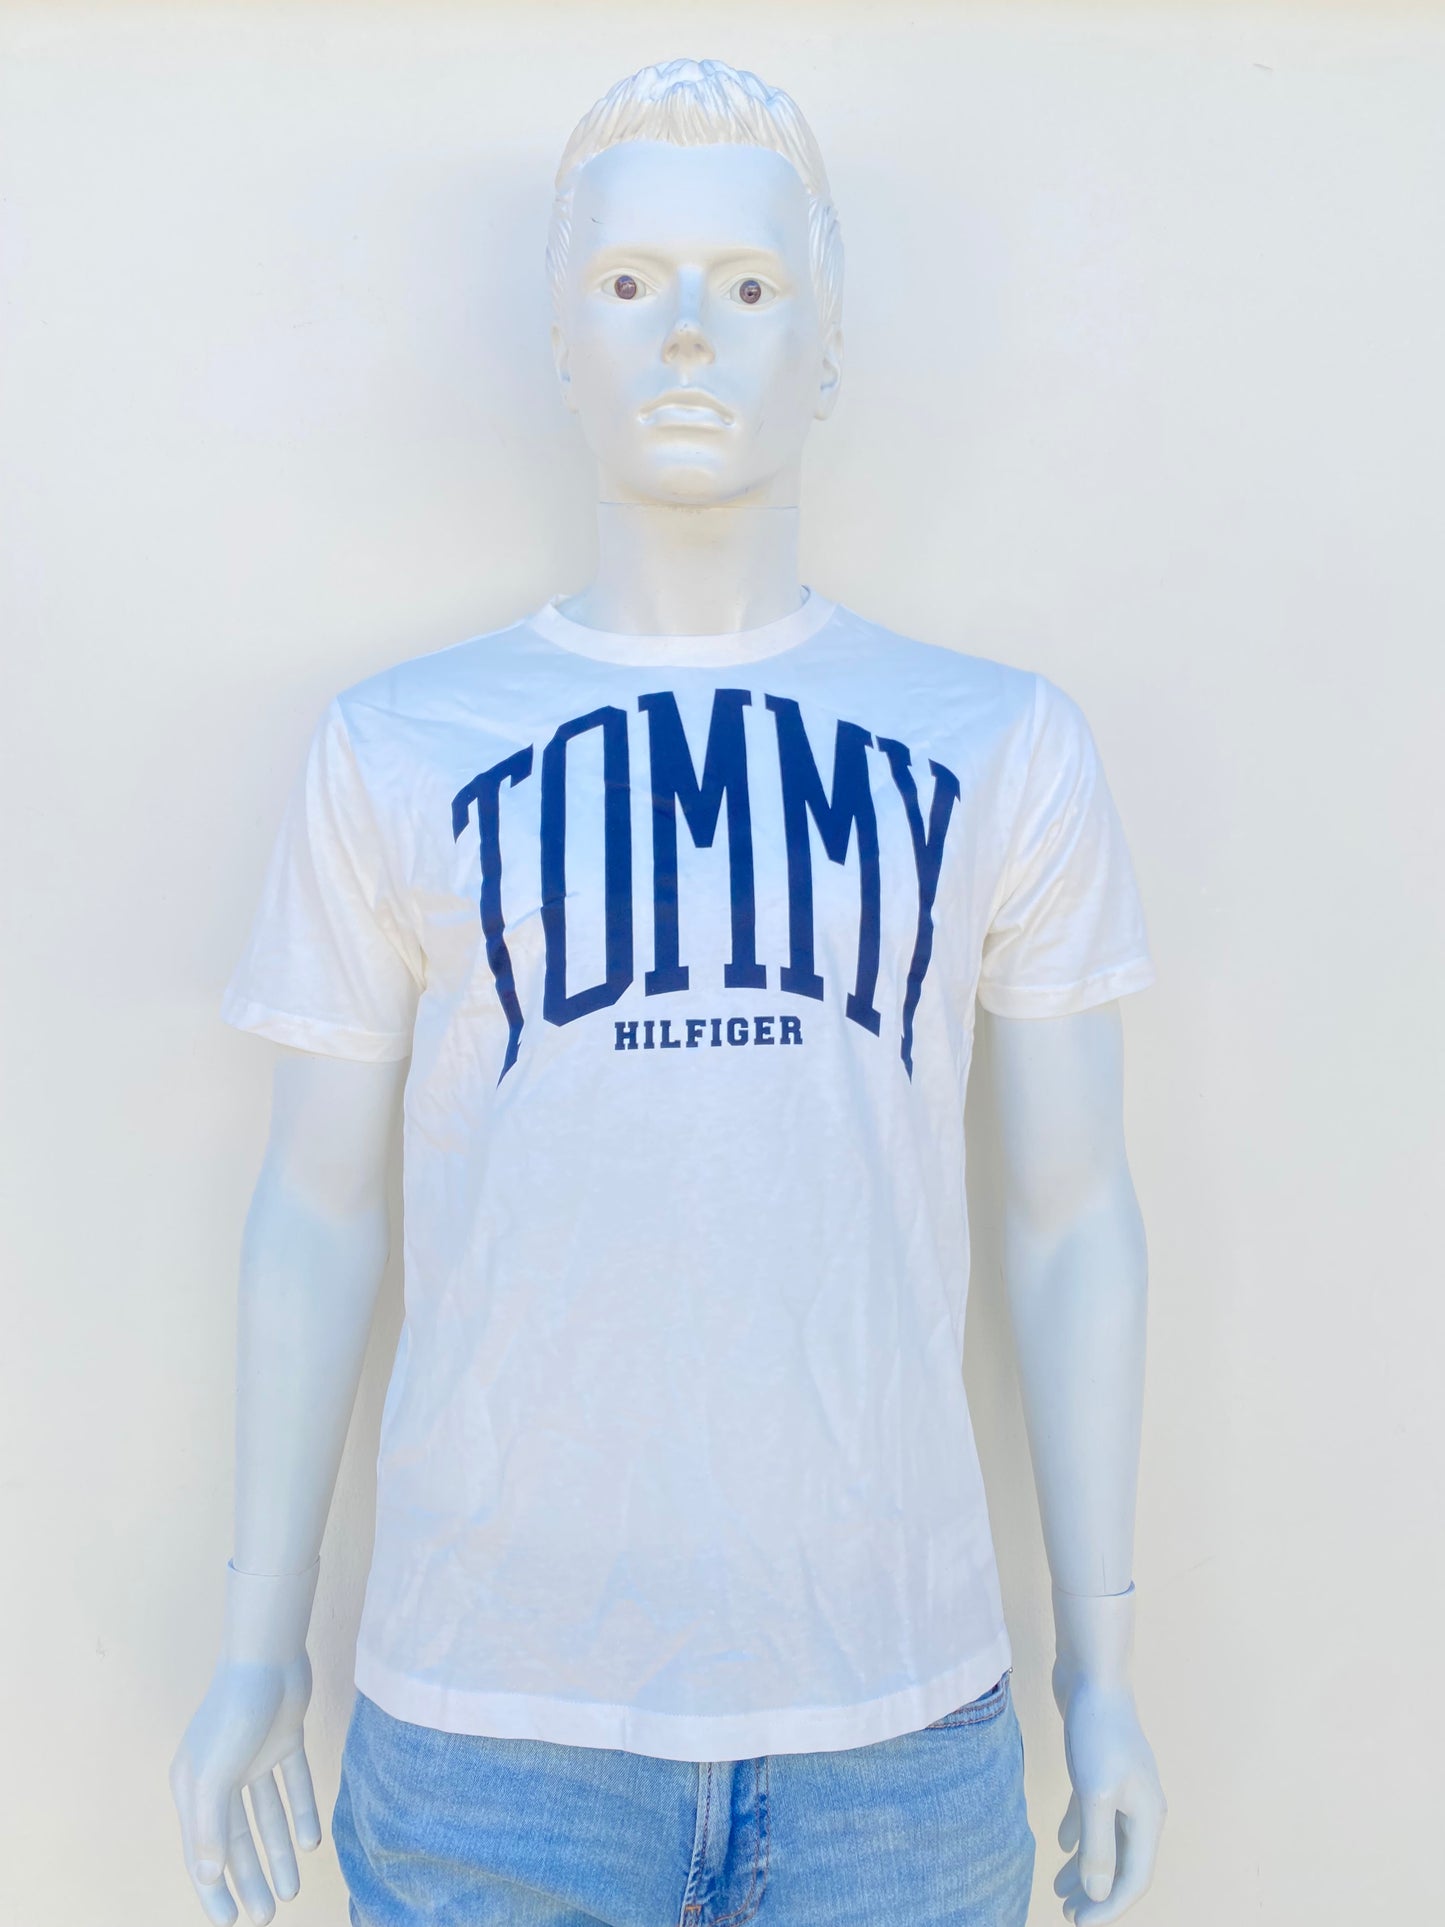 T-shirt Tommy Hilfiger original, blanco con letras de la marca azul oscuro.